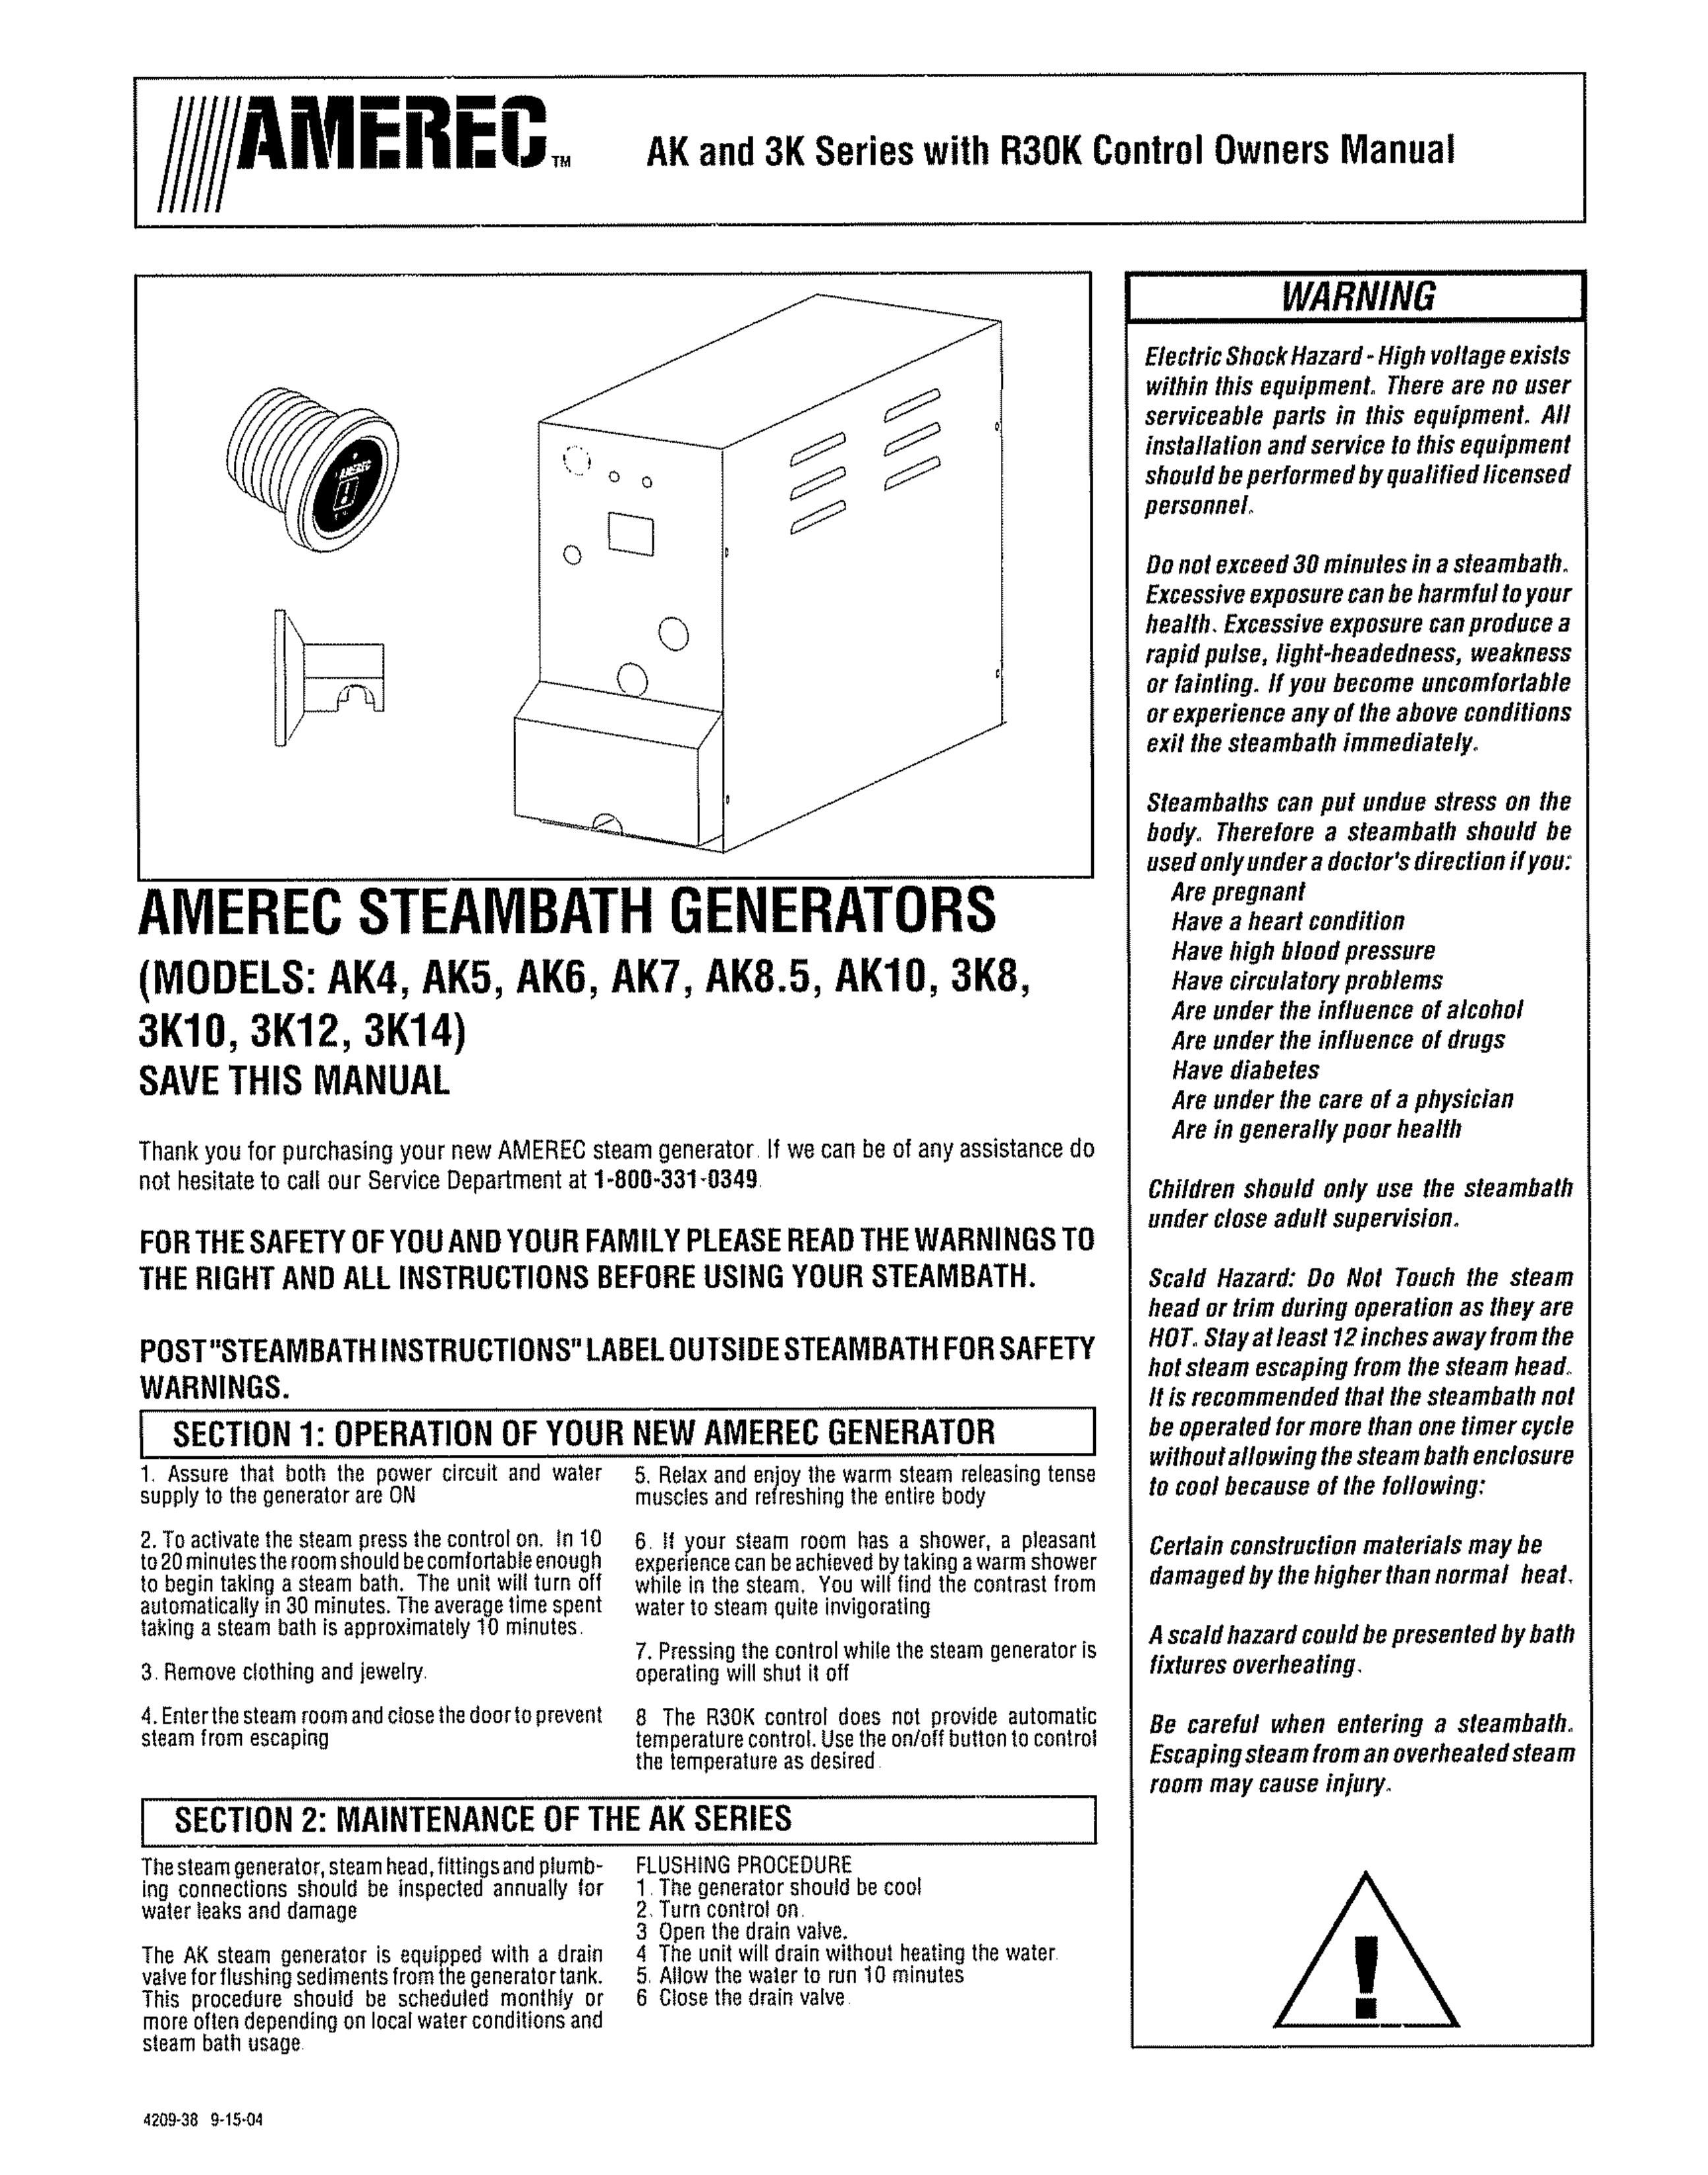 Amerec 3K12 Portable Generator User Manual